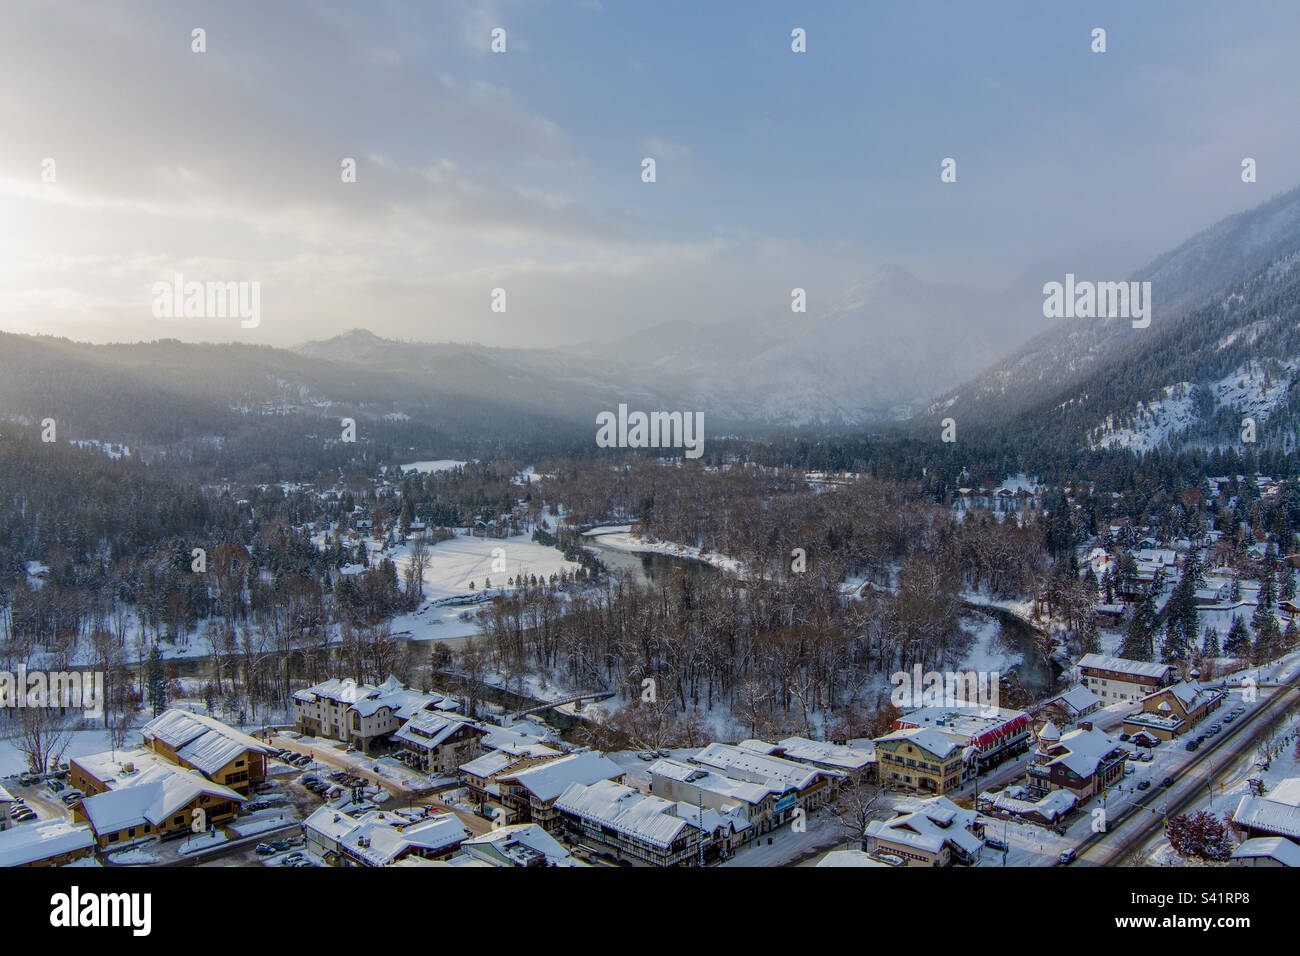 Leavenworth, Washington winter sunrise Stock Photo